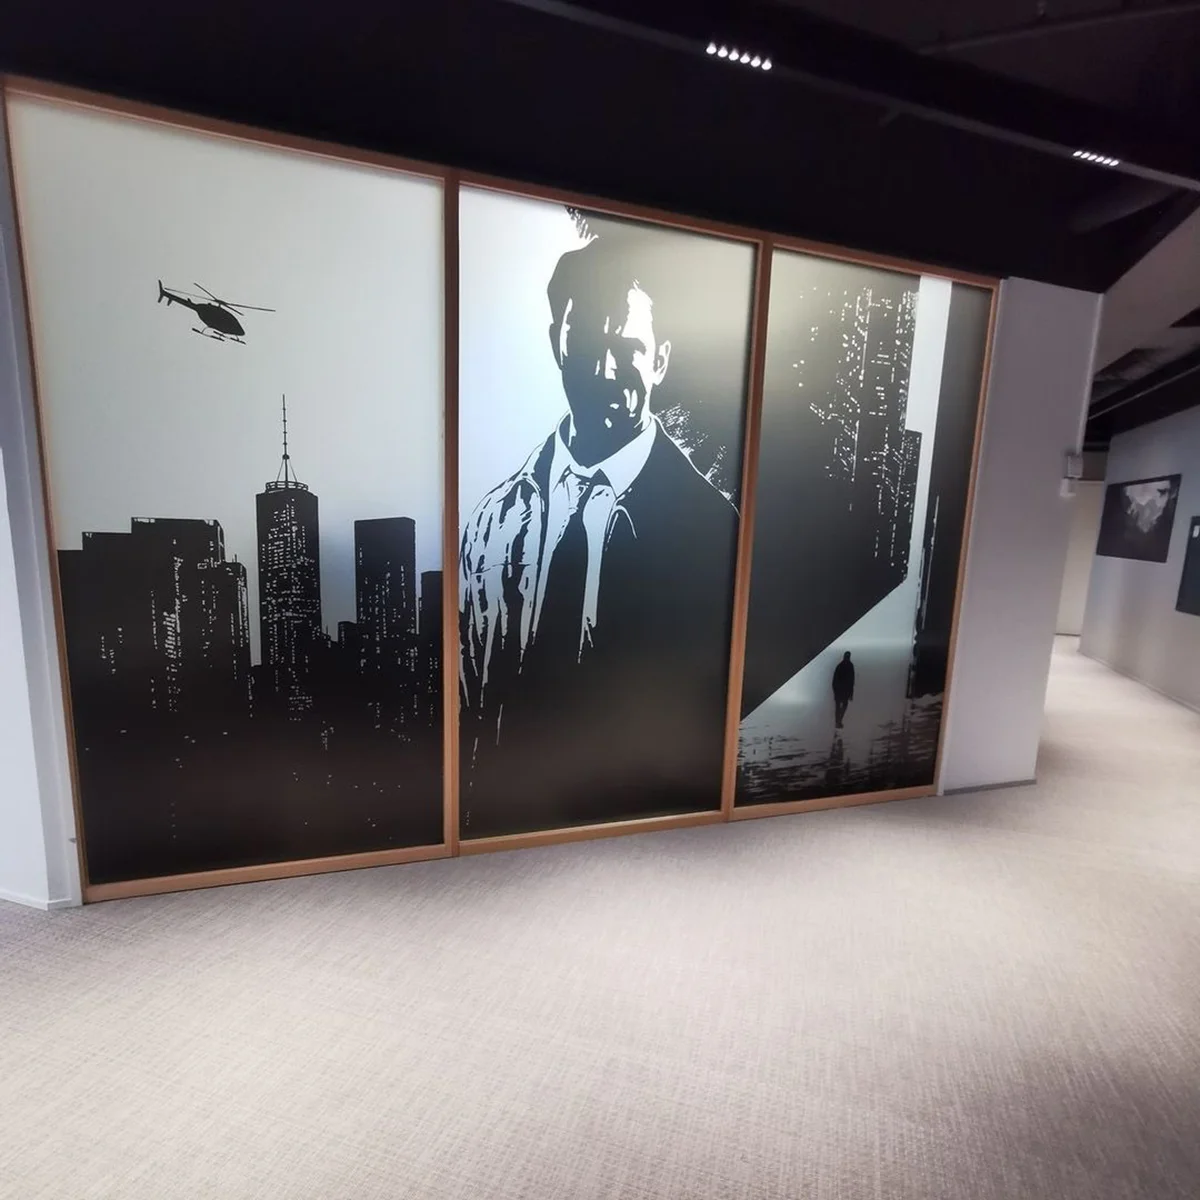 Remedy показала изображение Макса Пейна из будущего ремейка Max Payne 1 и 2 - фото 1